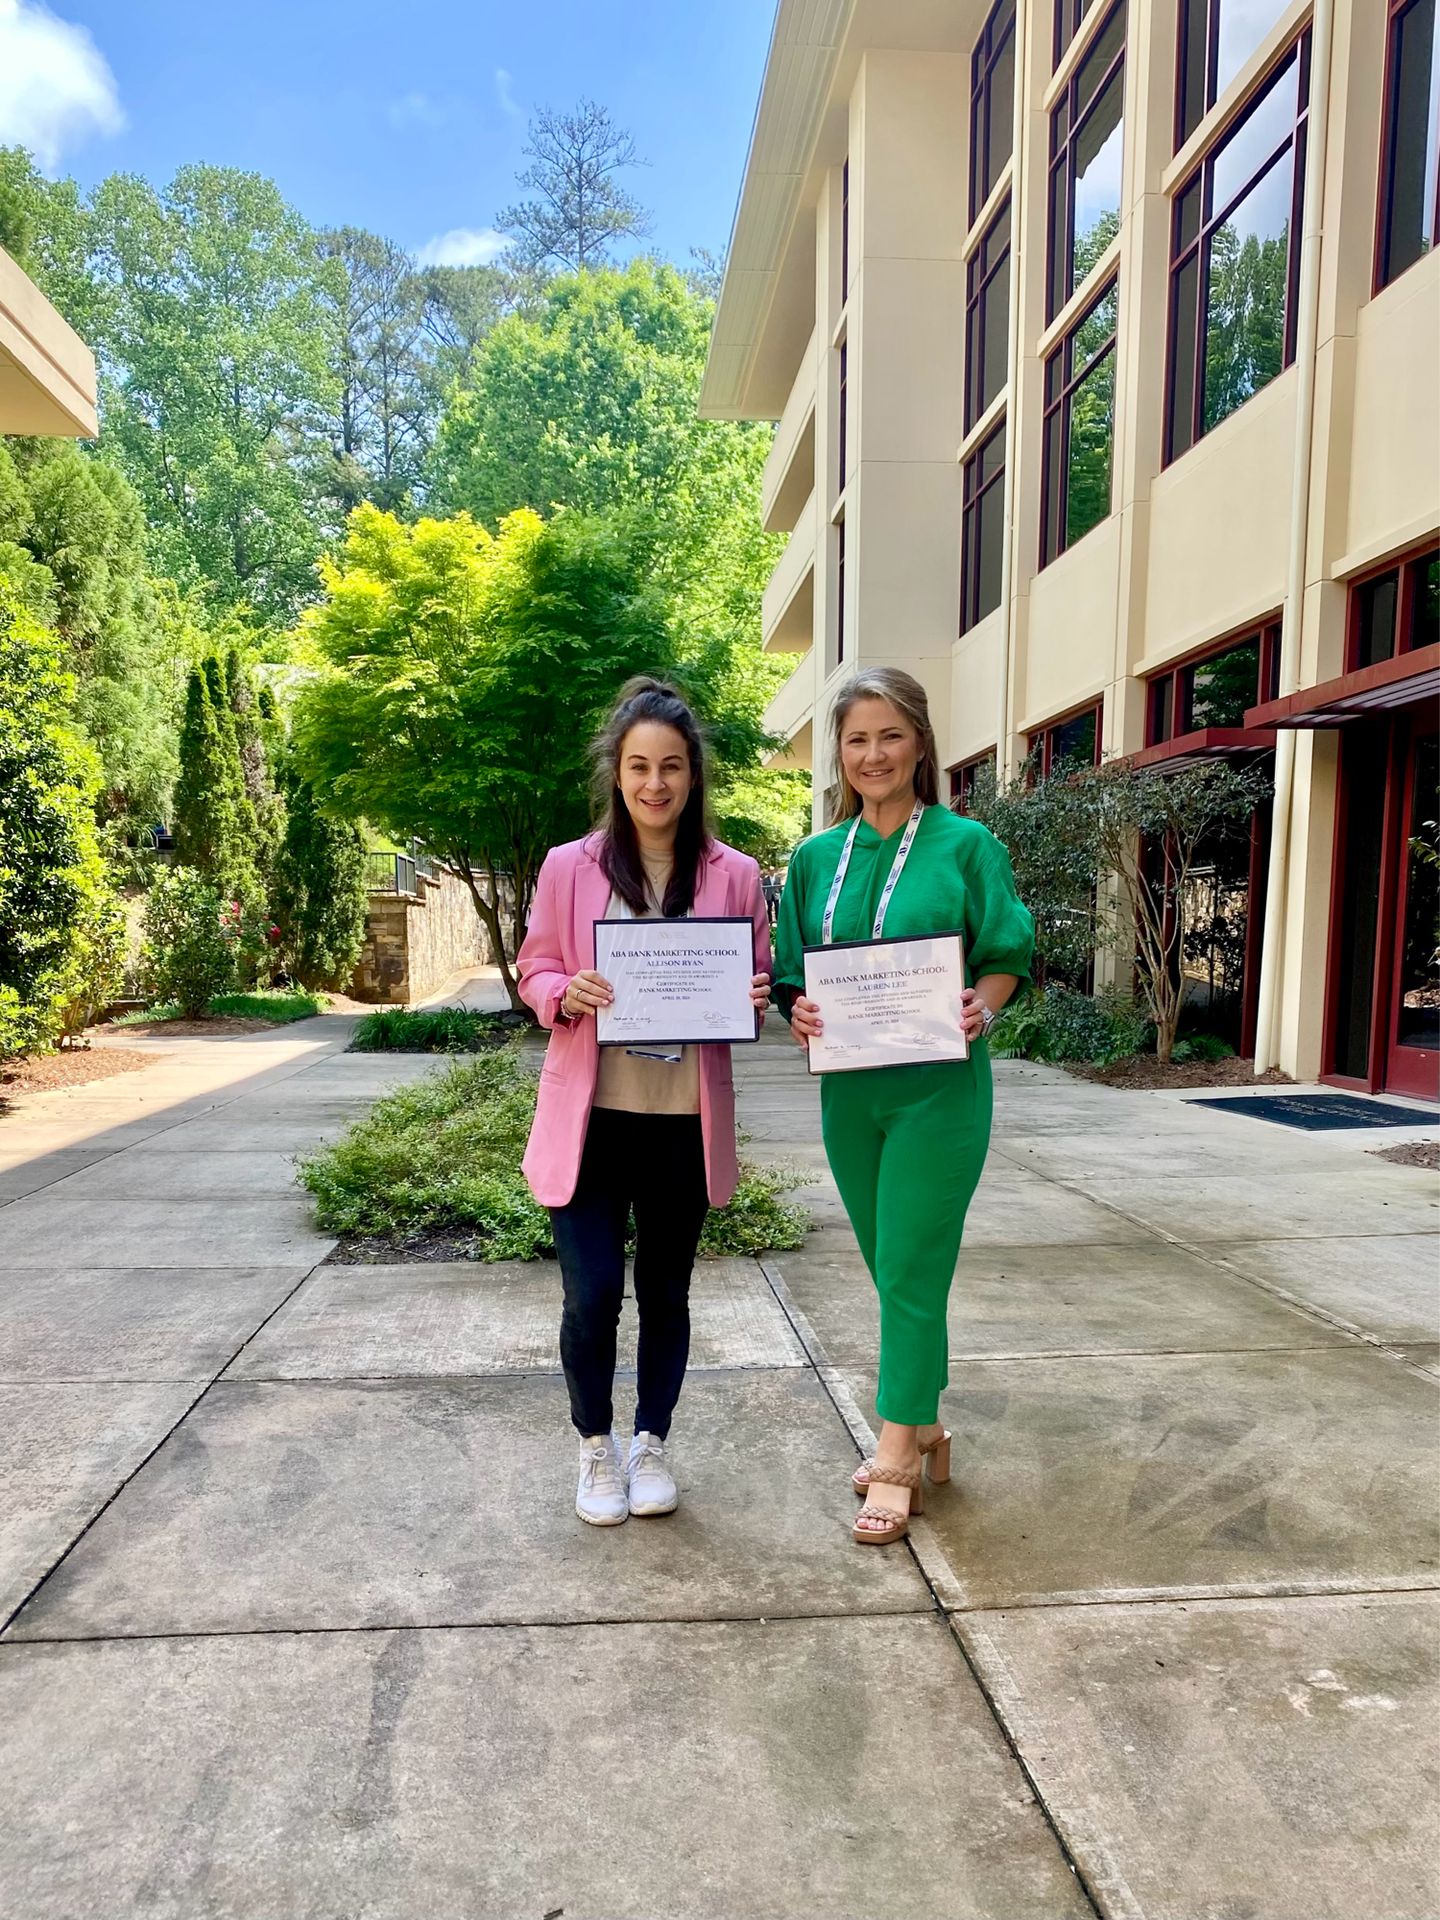 Lauren Lee and Allison Ryan holding Certificates from Bank Marketing School